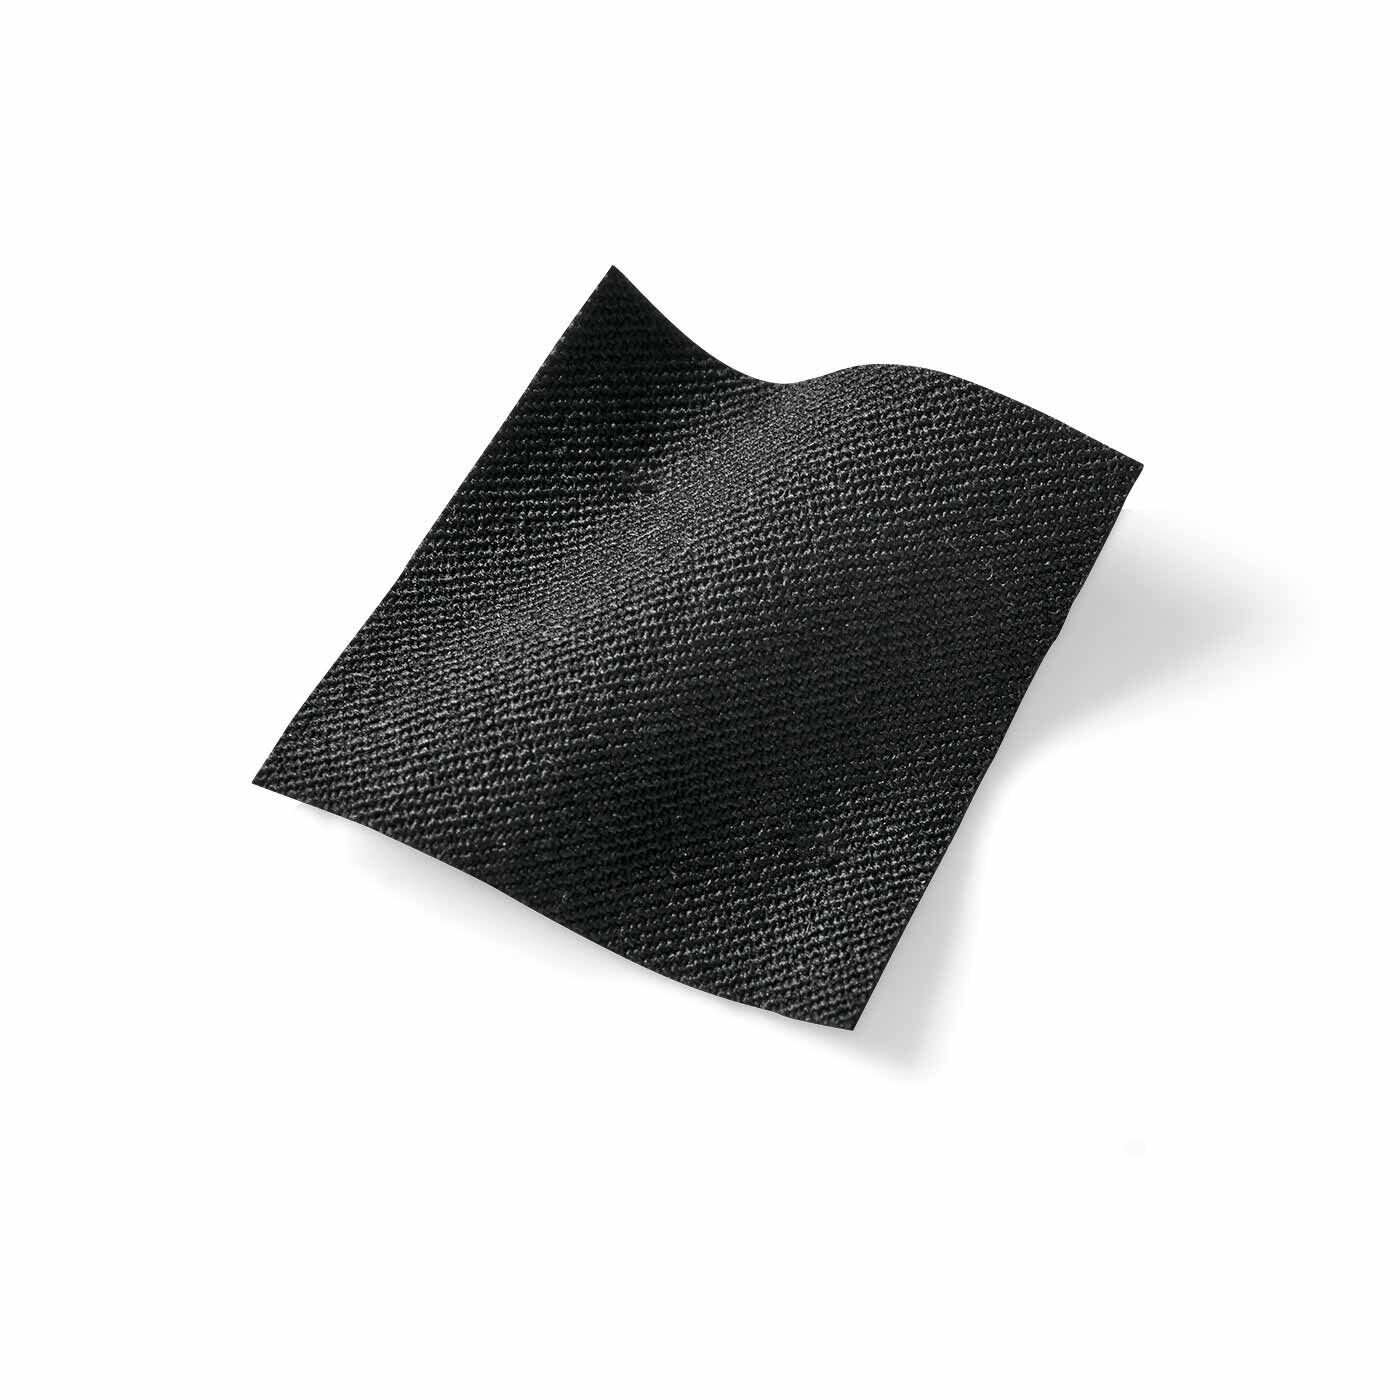 frauglatt|フラウグラット　オンオフ活躍大人のブラック♪ 涼やか美脚のゆるテーパードストレッチパンツ〈UV対策/接触冷感〉|ほどよい厚みと張り感があるストレッチ素材で、はいたときにひんやり感じる接触冷感素材。